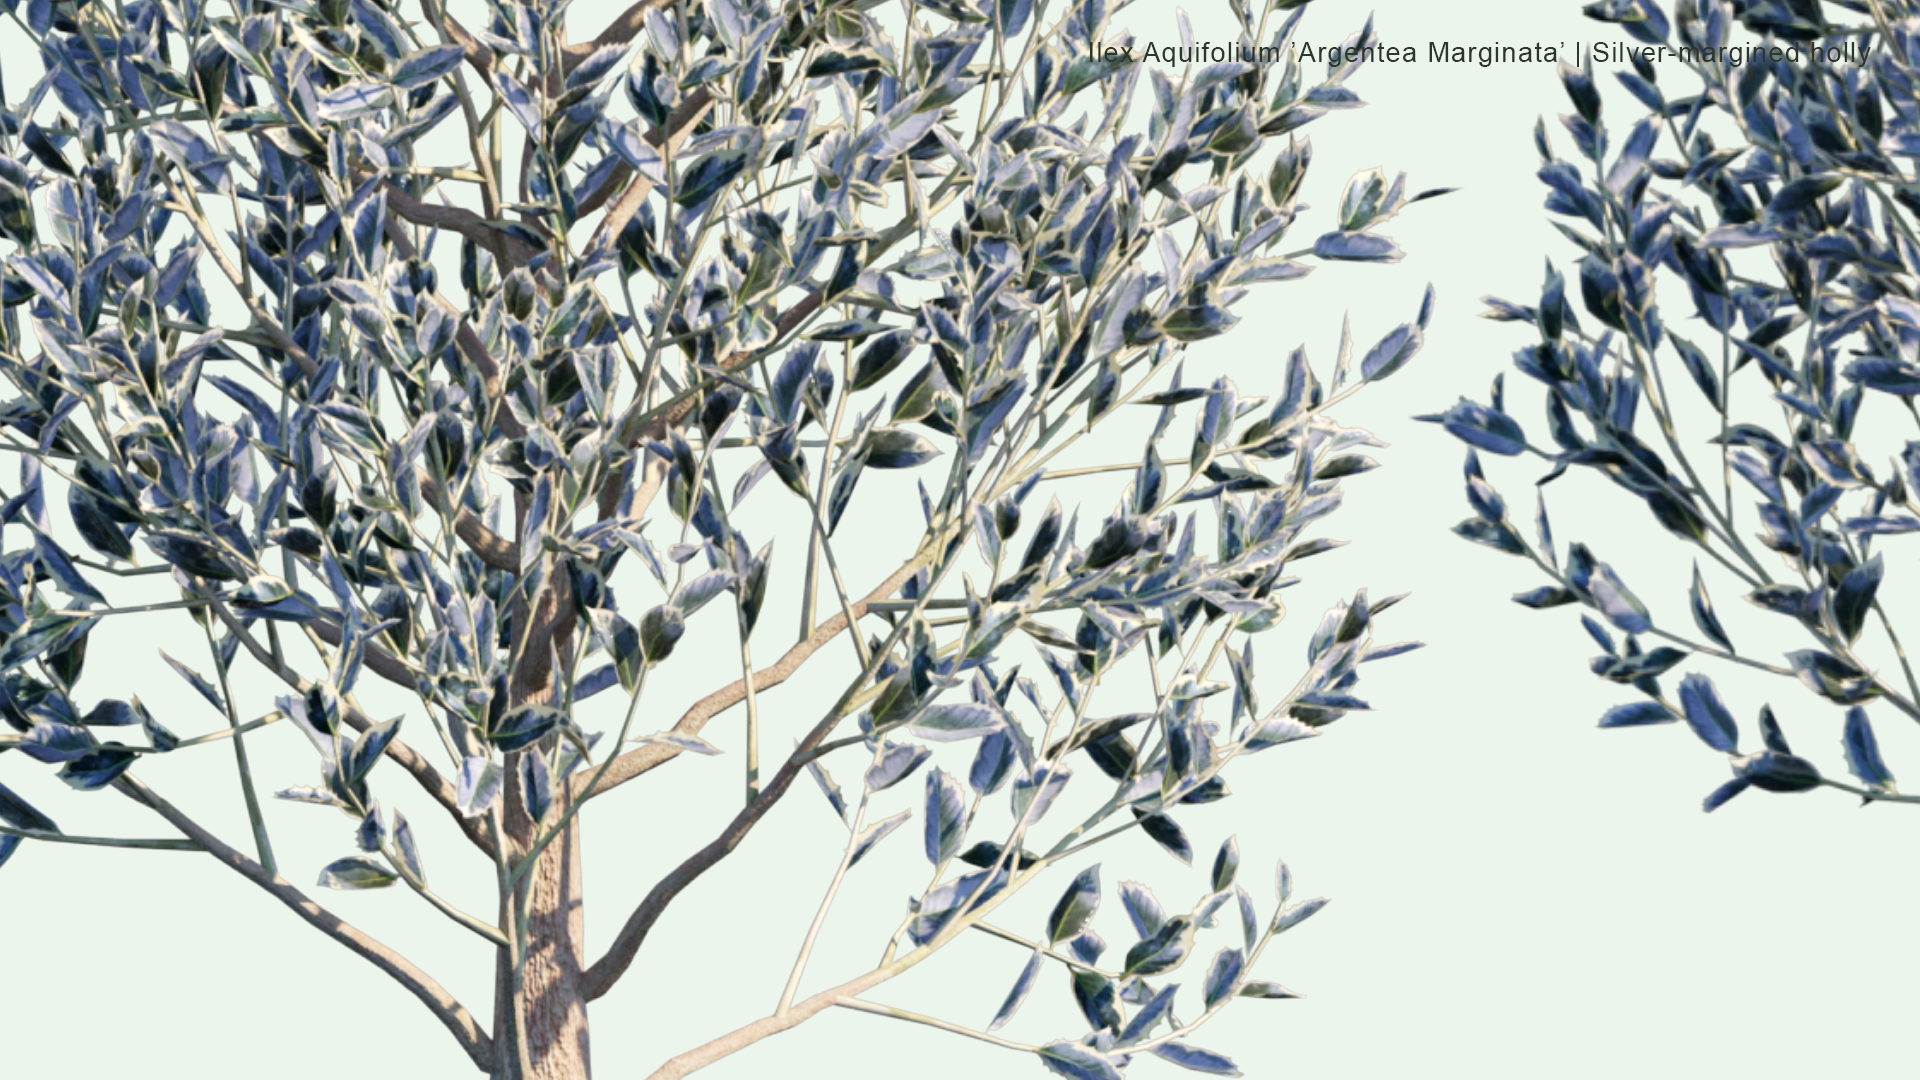 2D Ilex Aquifolium 'Argentea Marginata' - Silver-Margined Holly